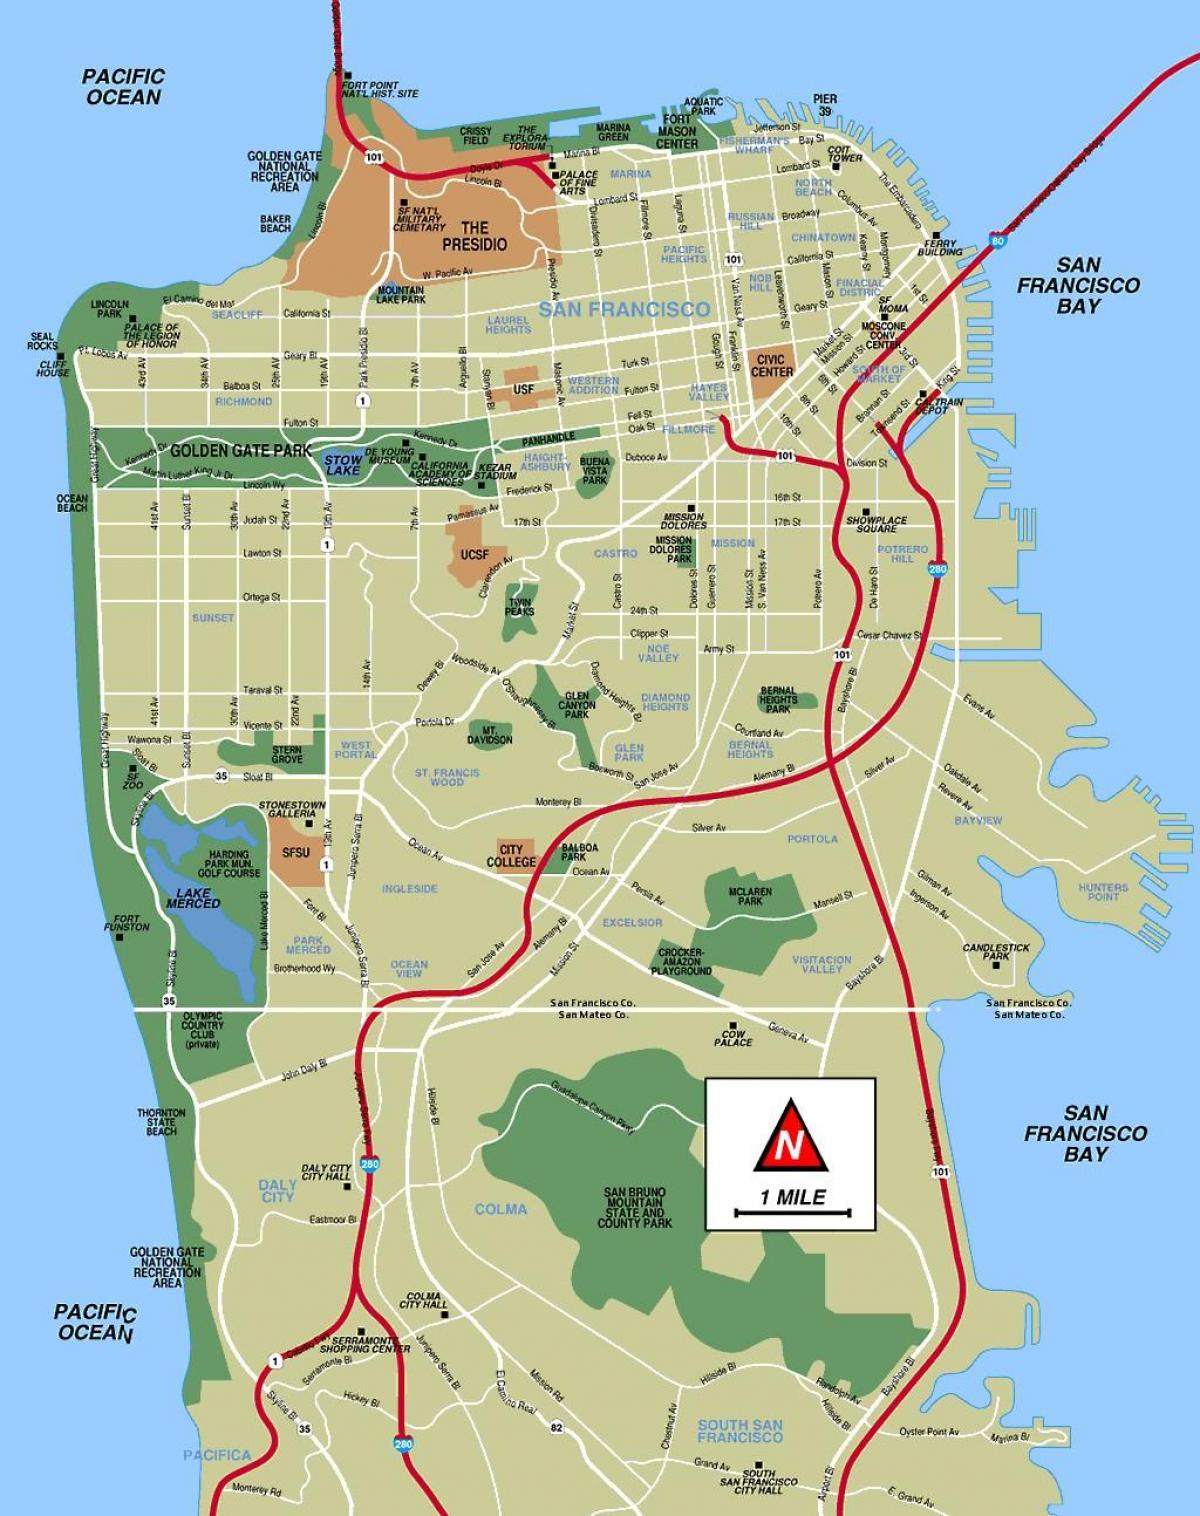 Stadtplan von San Francisco